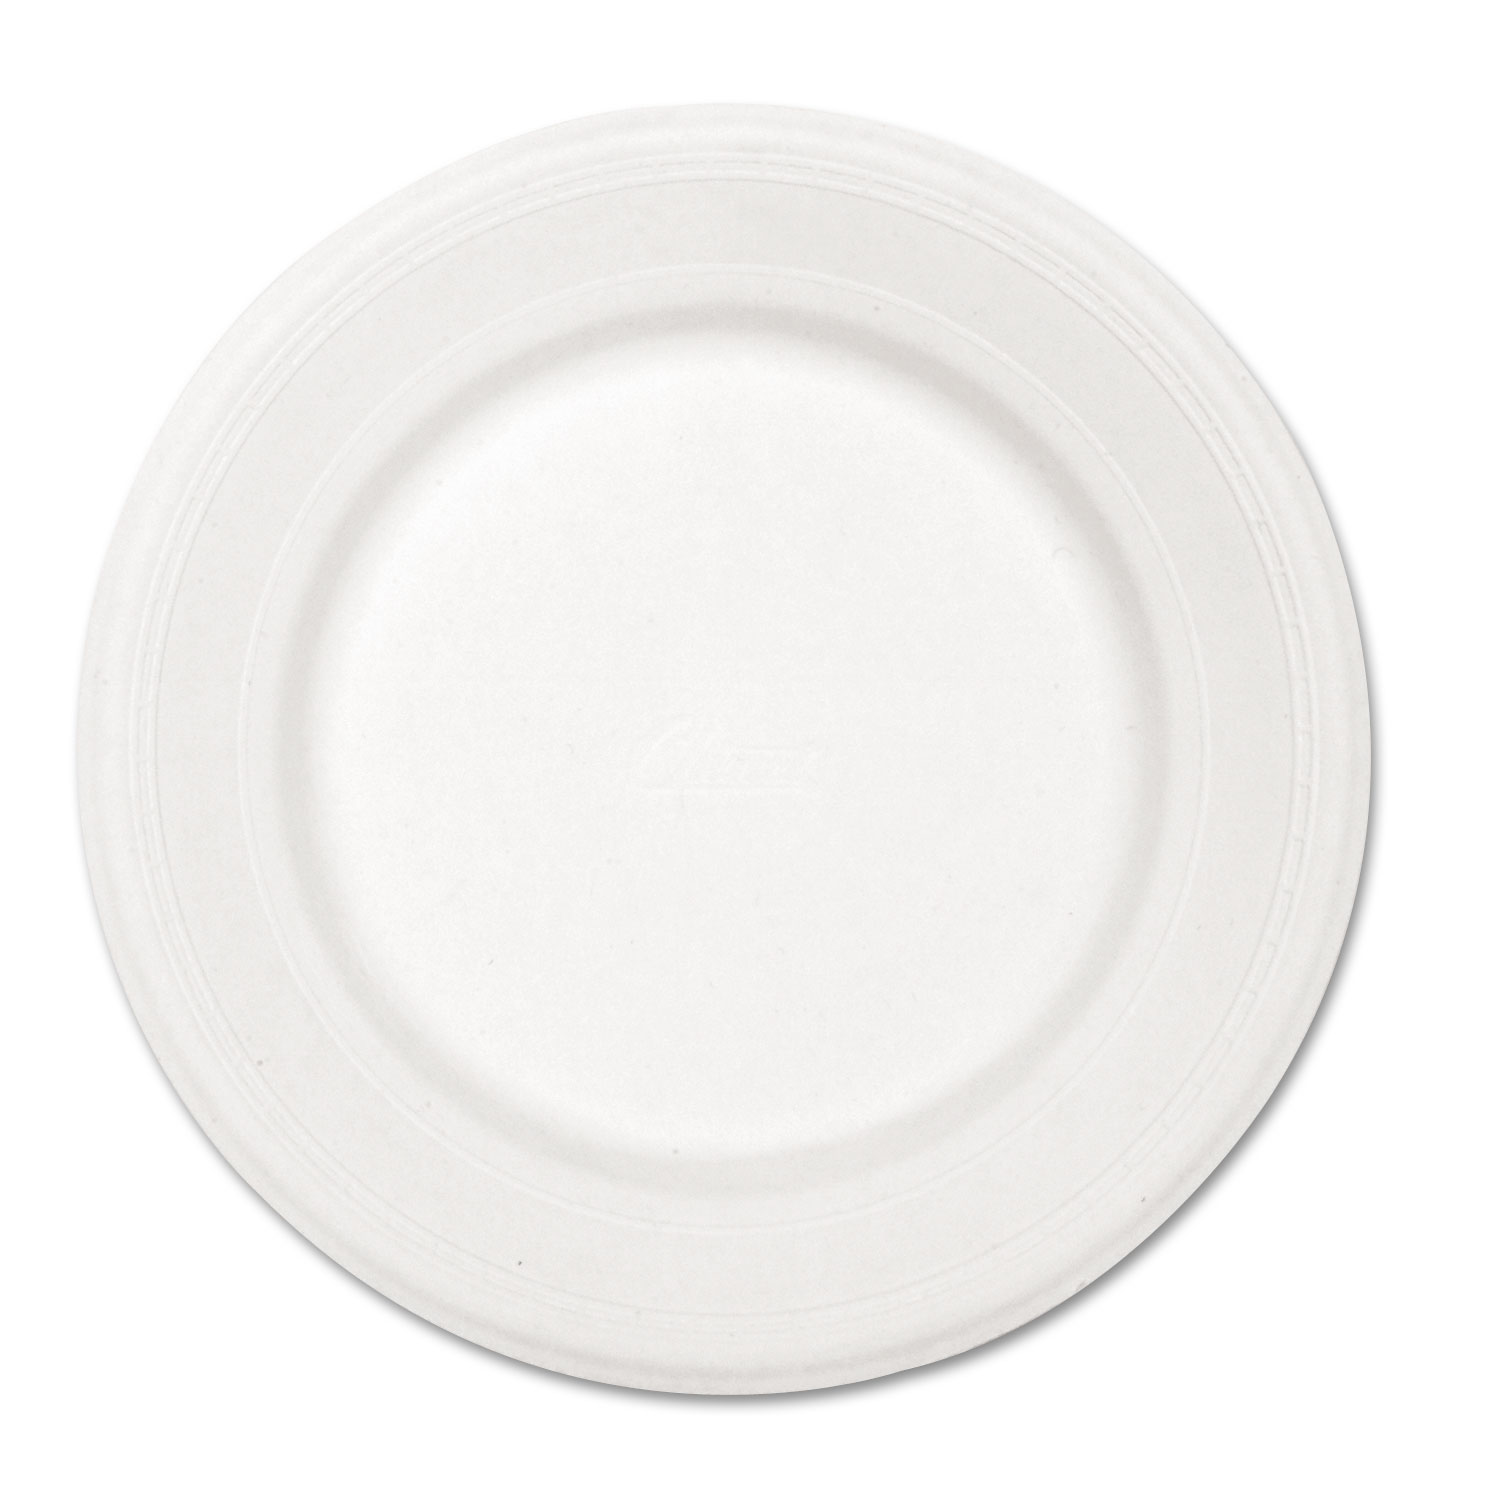  Chinet 21217 Paper Dinnerware, Plate, 10 1/2 dia, White, 500/Carton (HUH21217) 